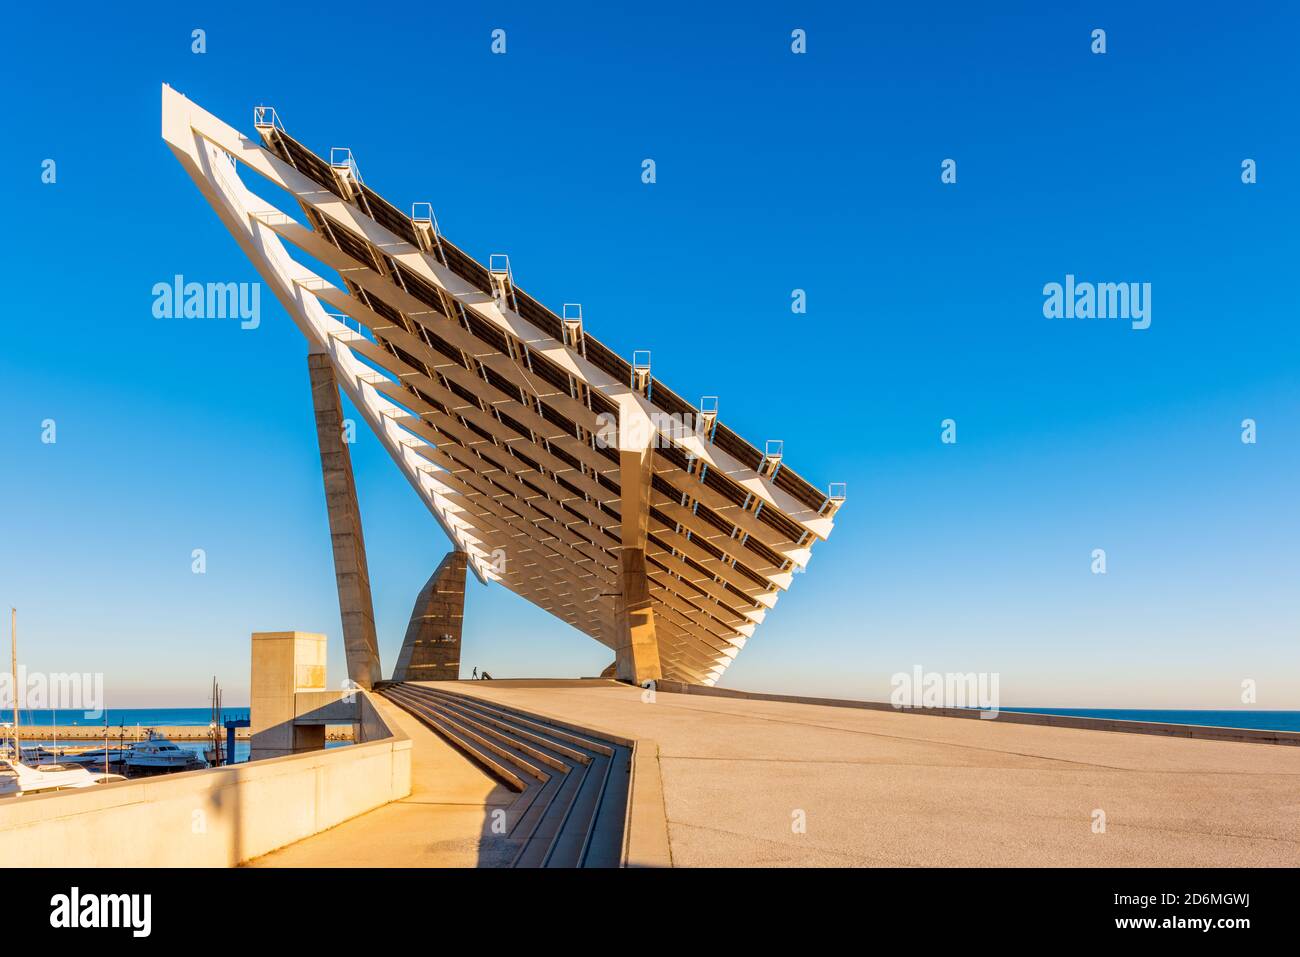 Pergola fotovoltaica en el barrio Fórum de Barcelona, España. Es una de las centrales solares más grandes de España y cuenta con cerca de 3,000 paneles. Foto de stock